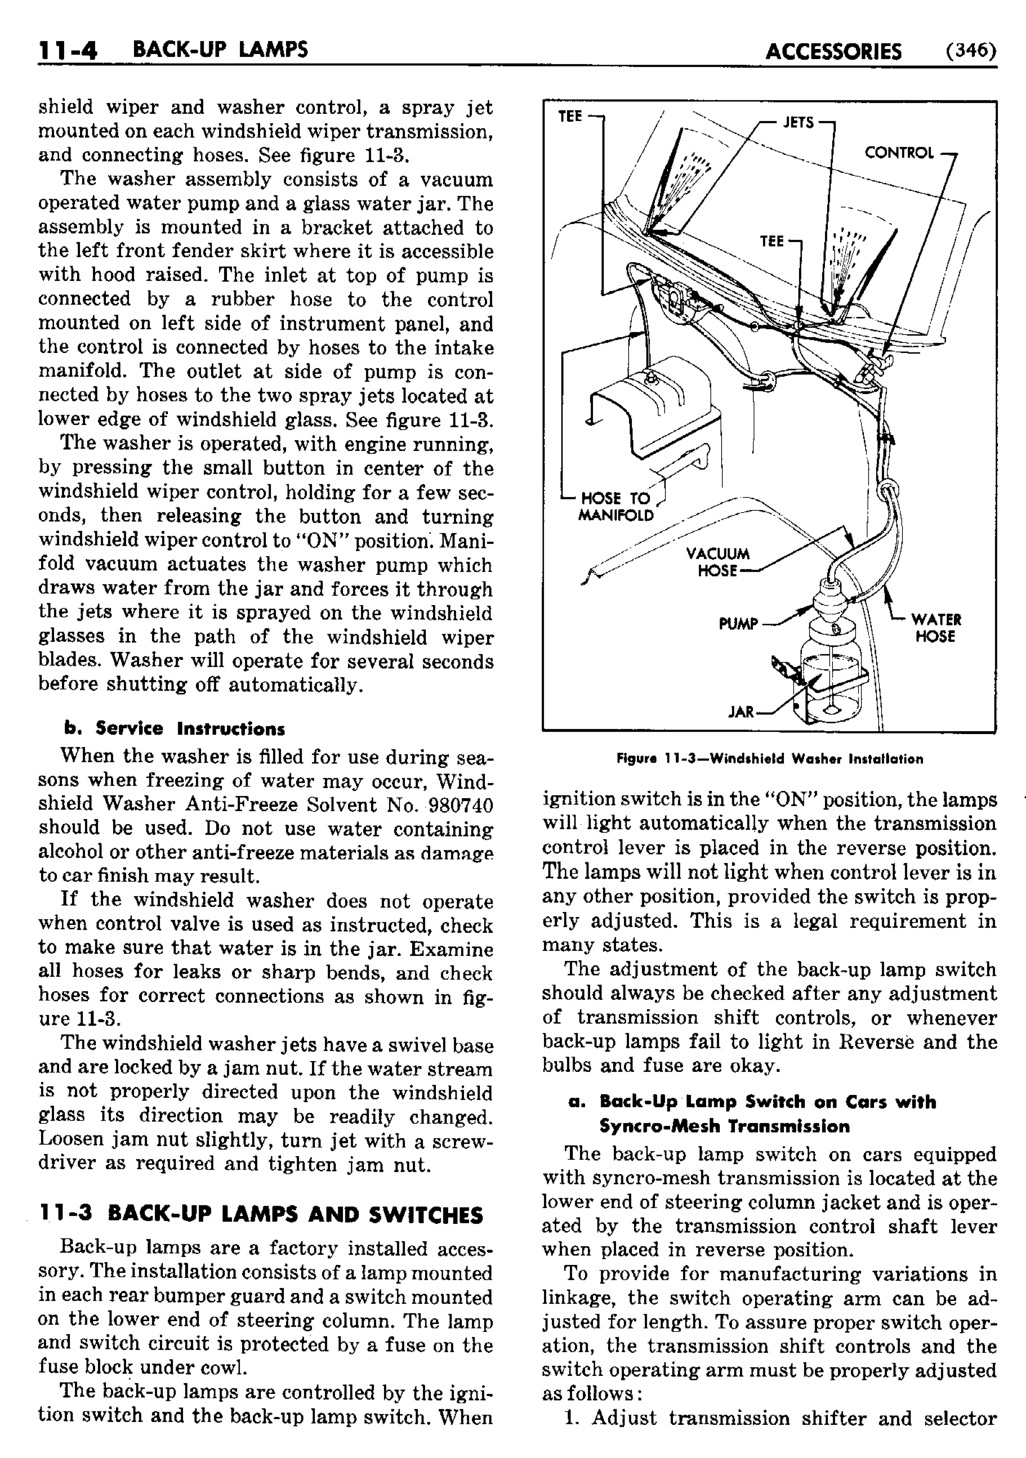 n_12 1950 Buick Shop Manual - Accessories-004-004.jpg